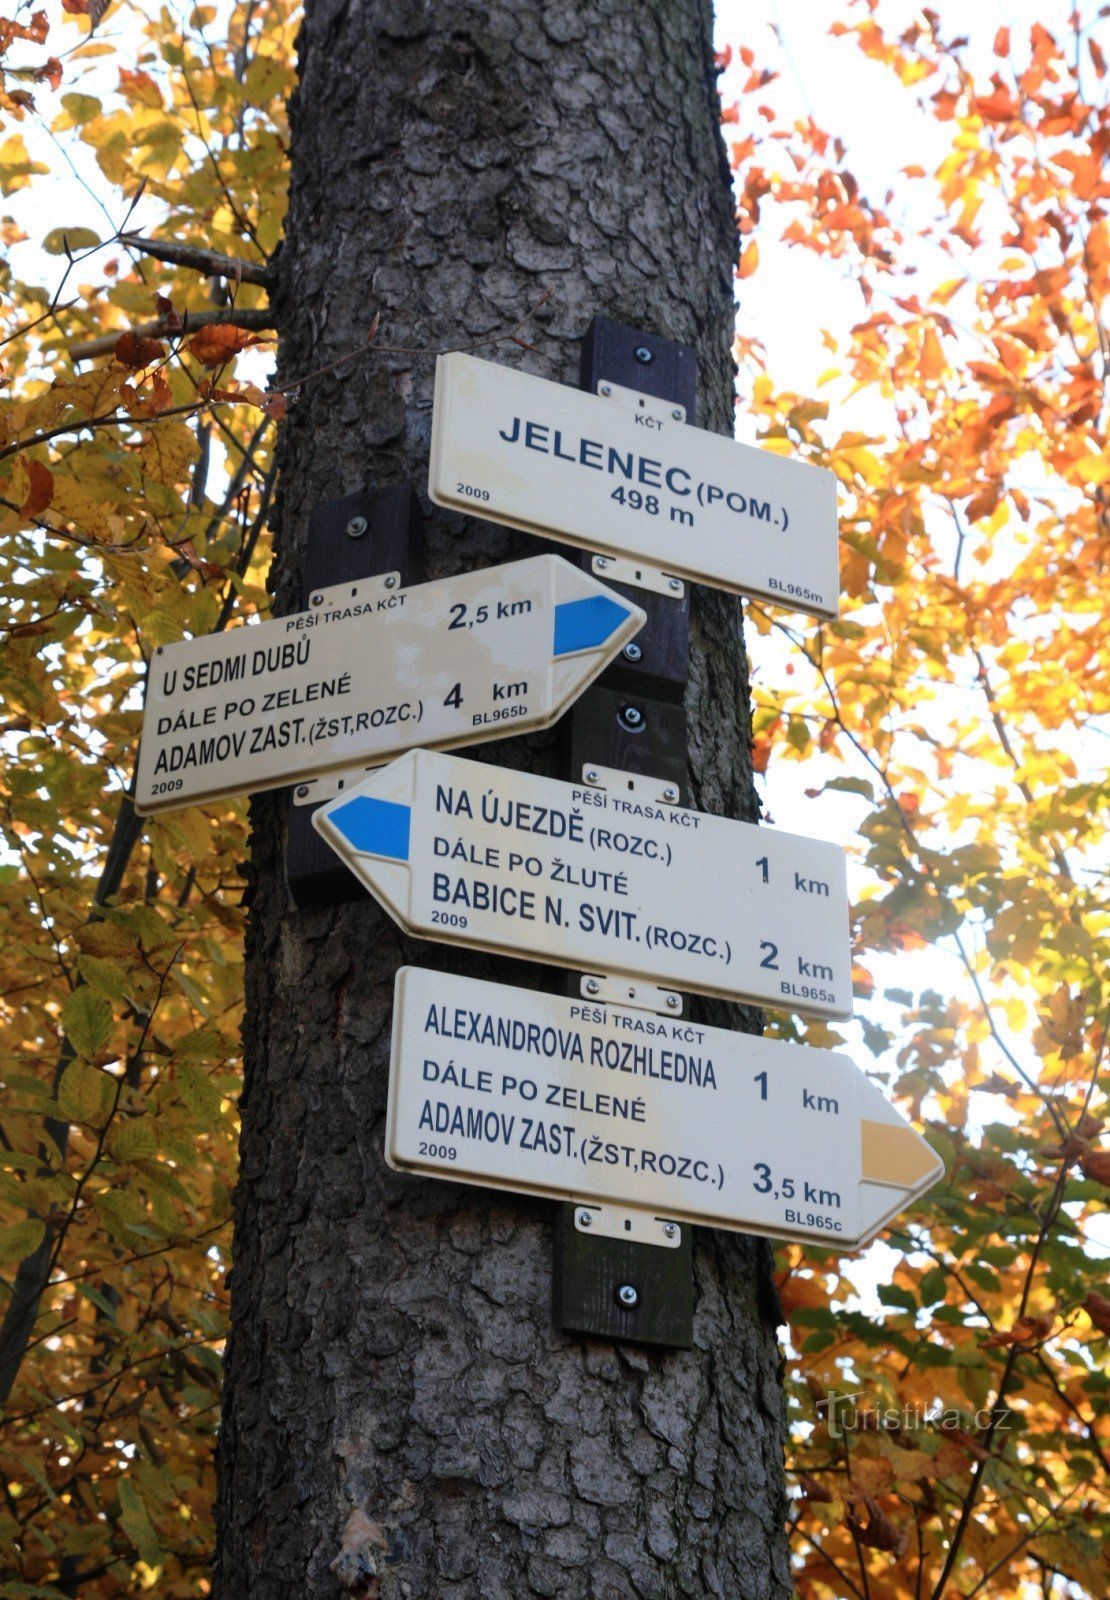 Răscruce turistică monument Jelenec